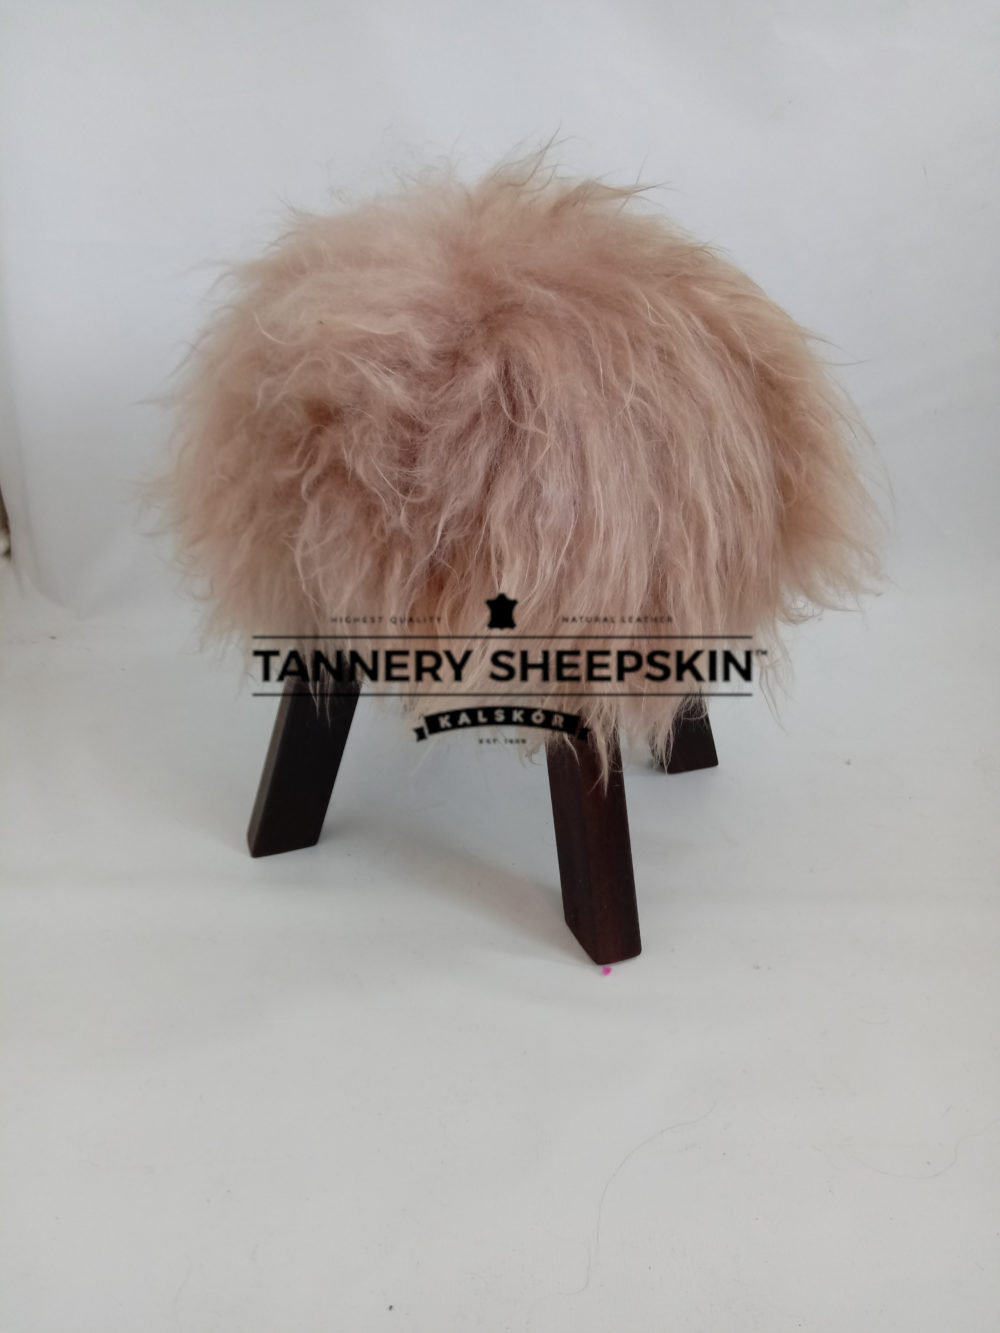 Sheepskin stool leather chairs Producent owczych skór dekoracyjnych | Tannery Sheepskin | KalSkór 4